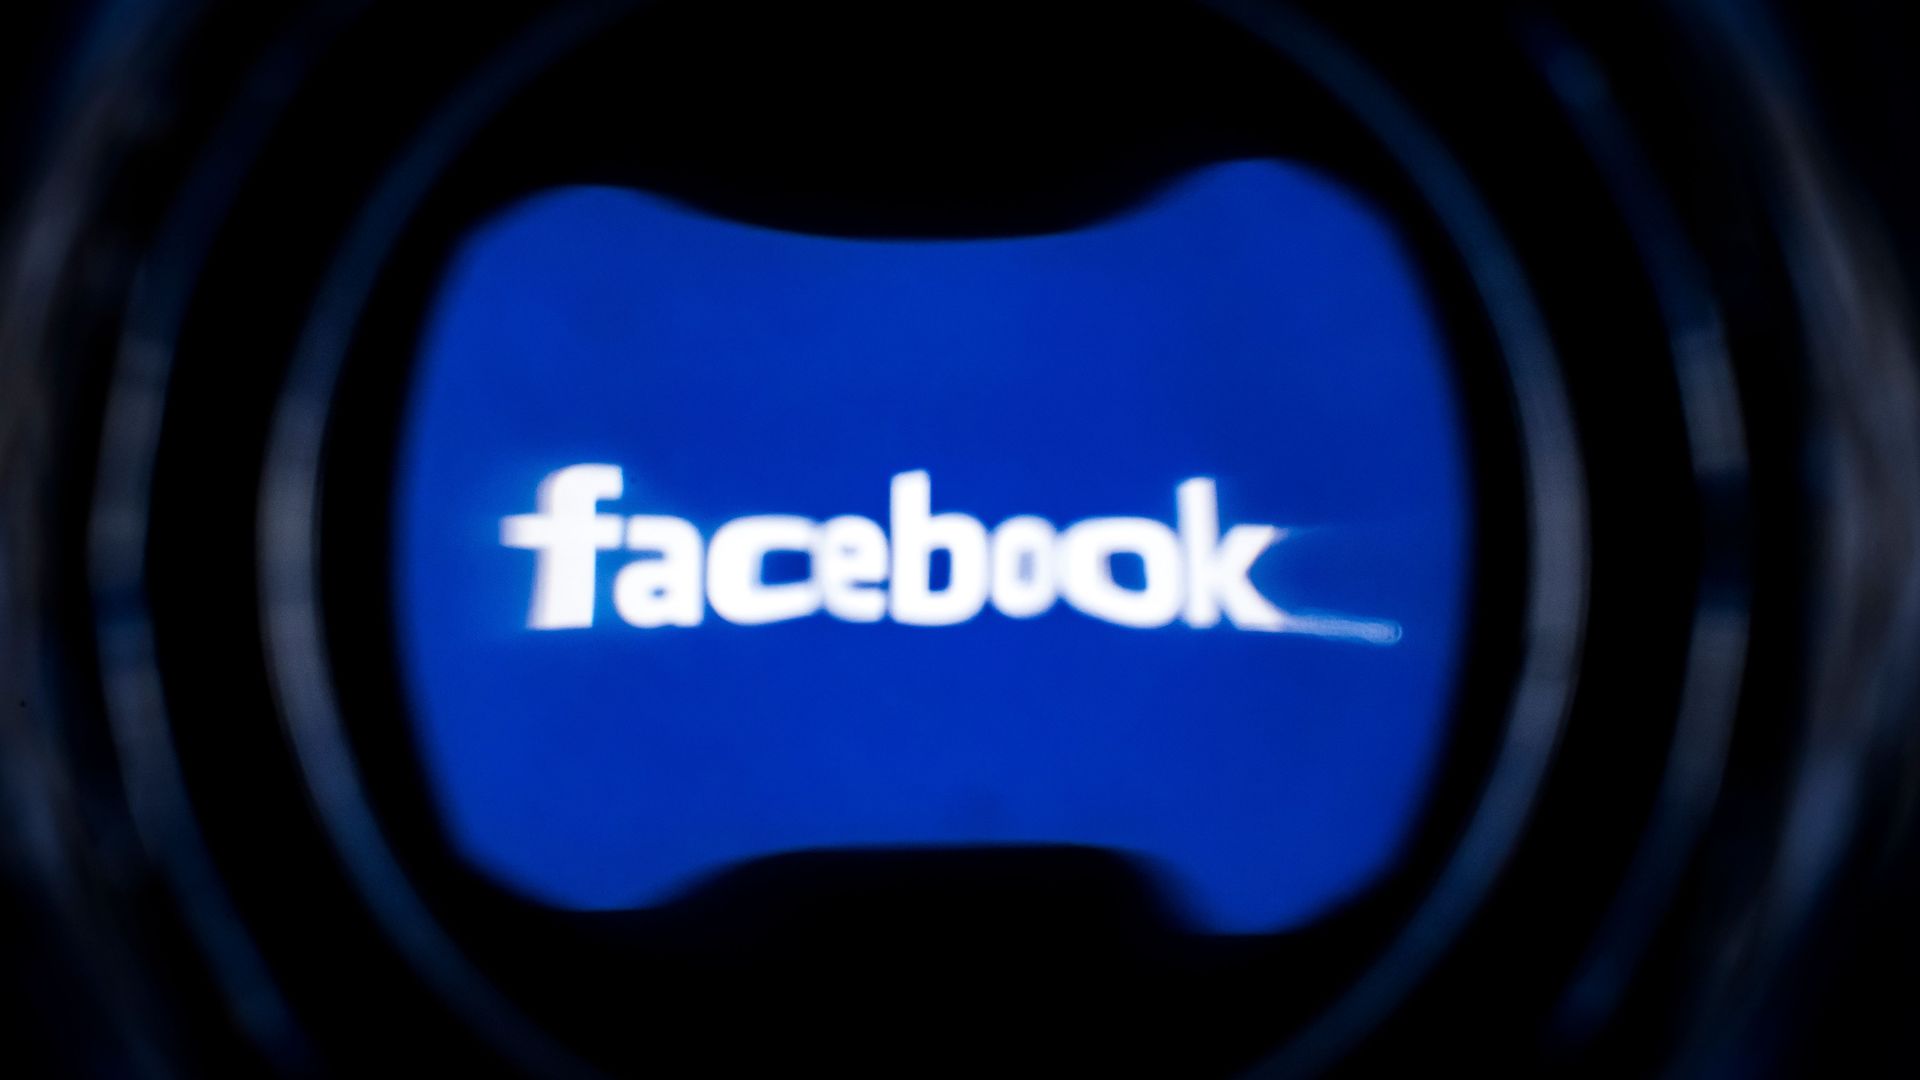 A distorted Facebook logo